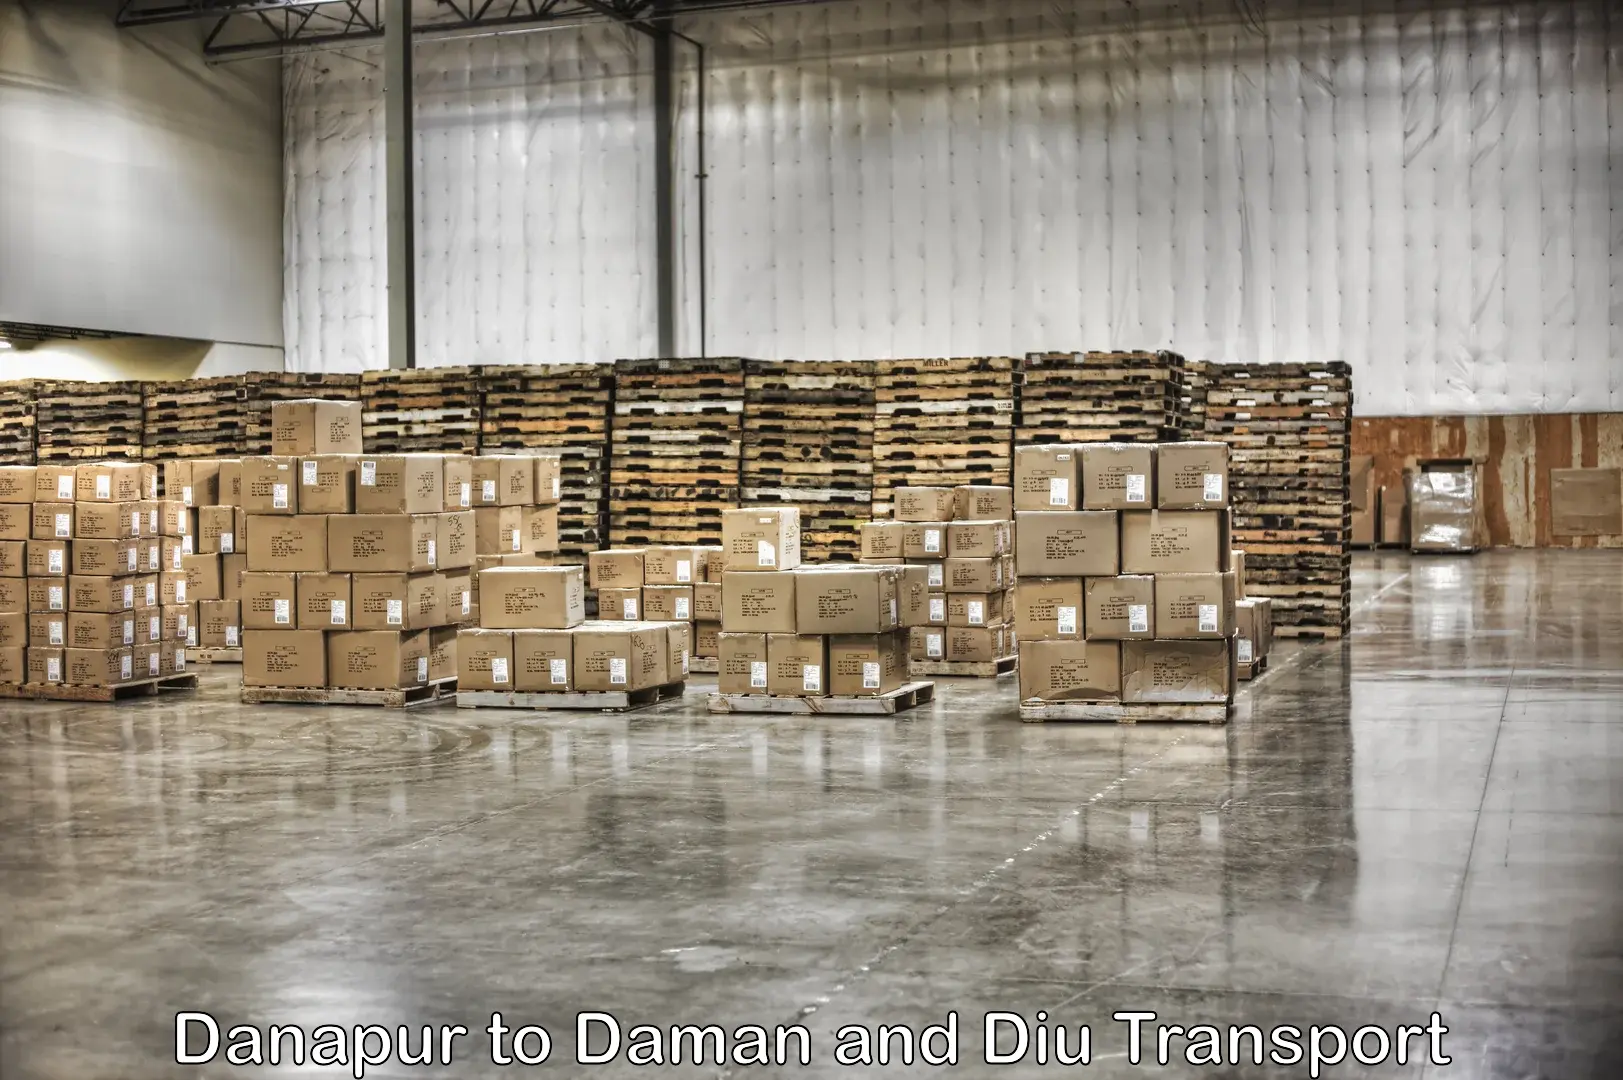 Container transport service Danapur to Diu